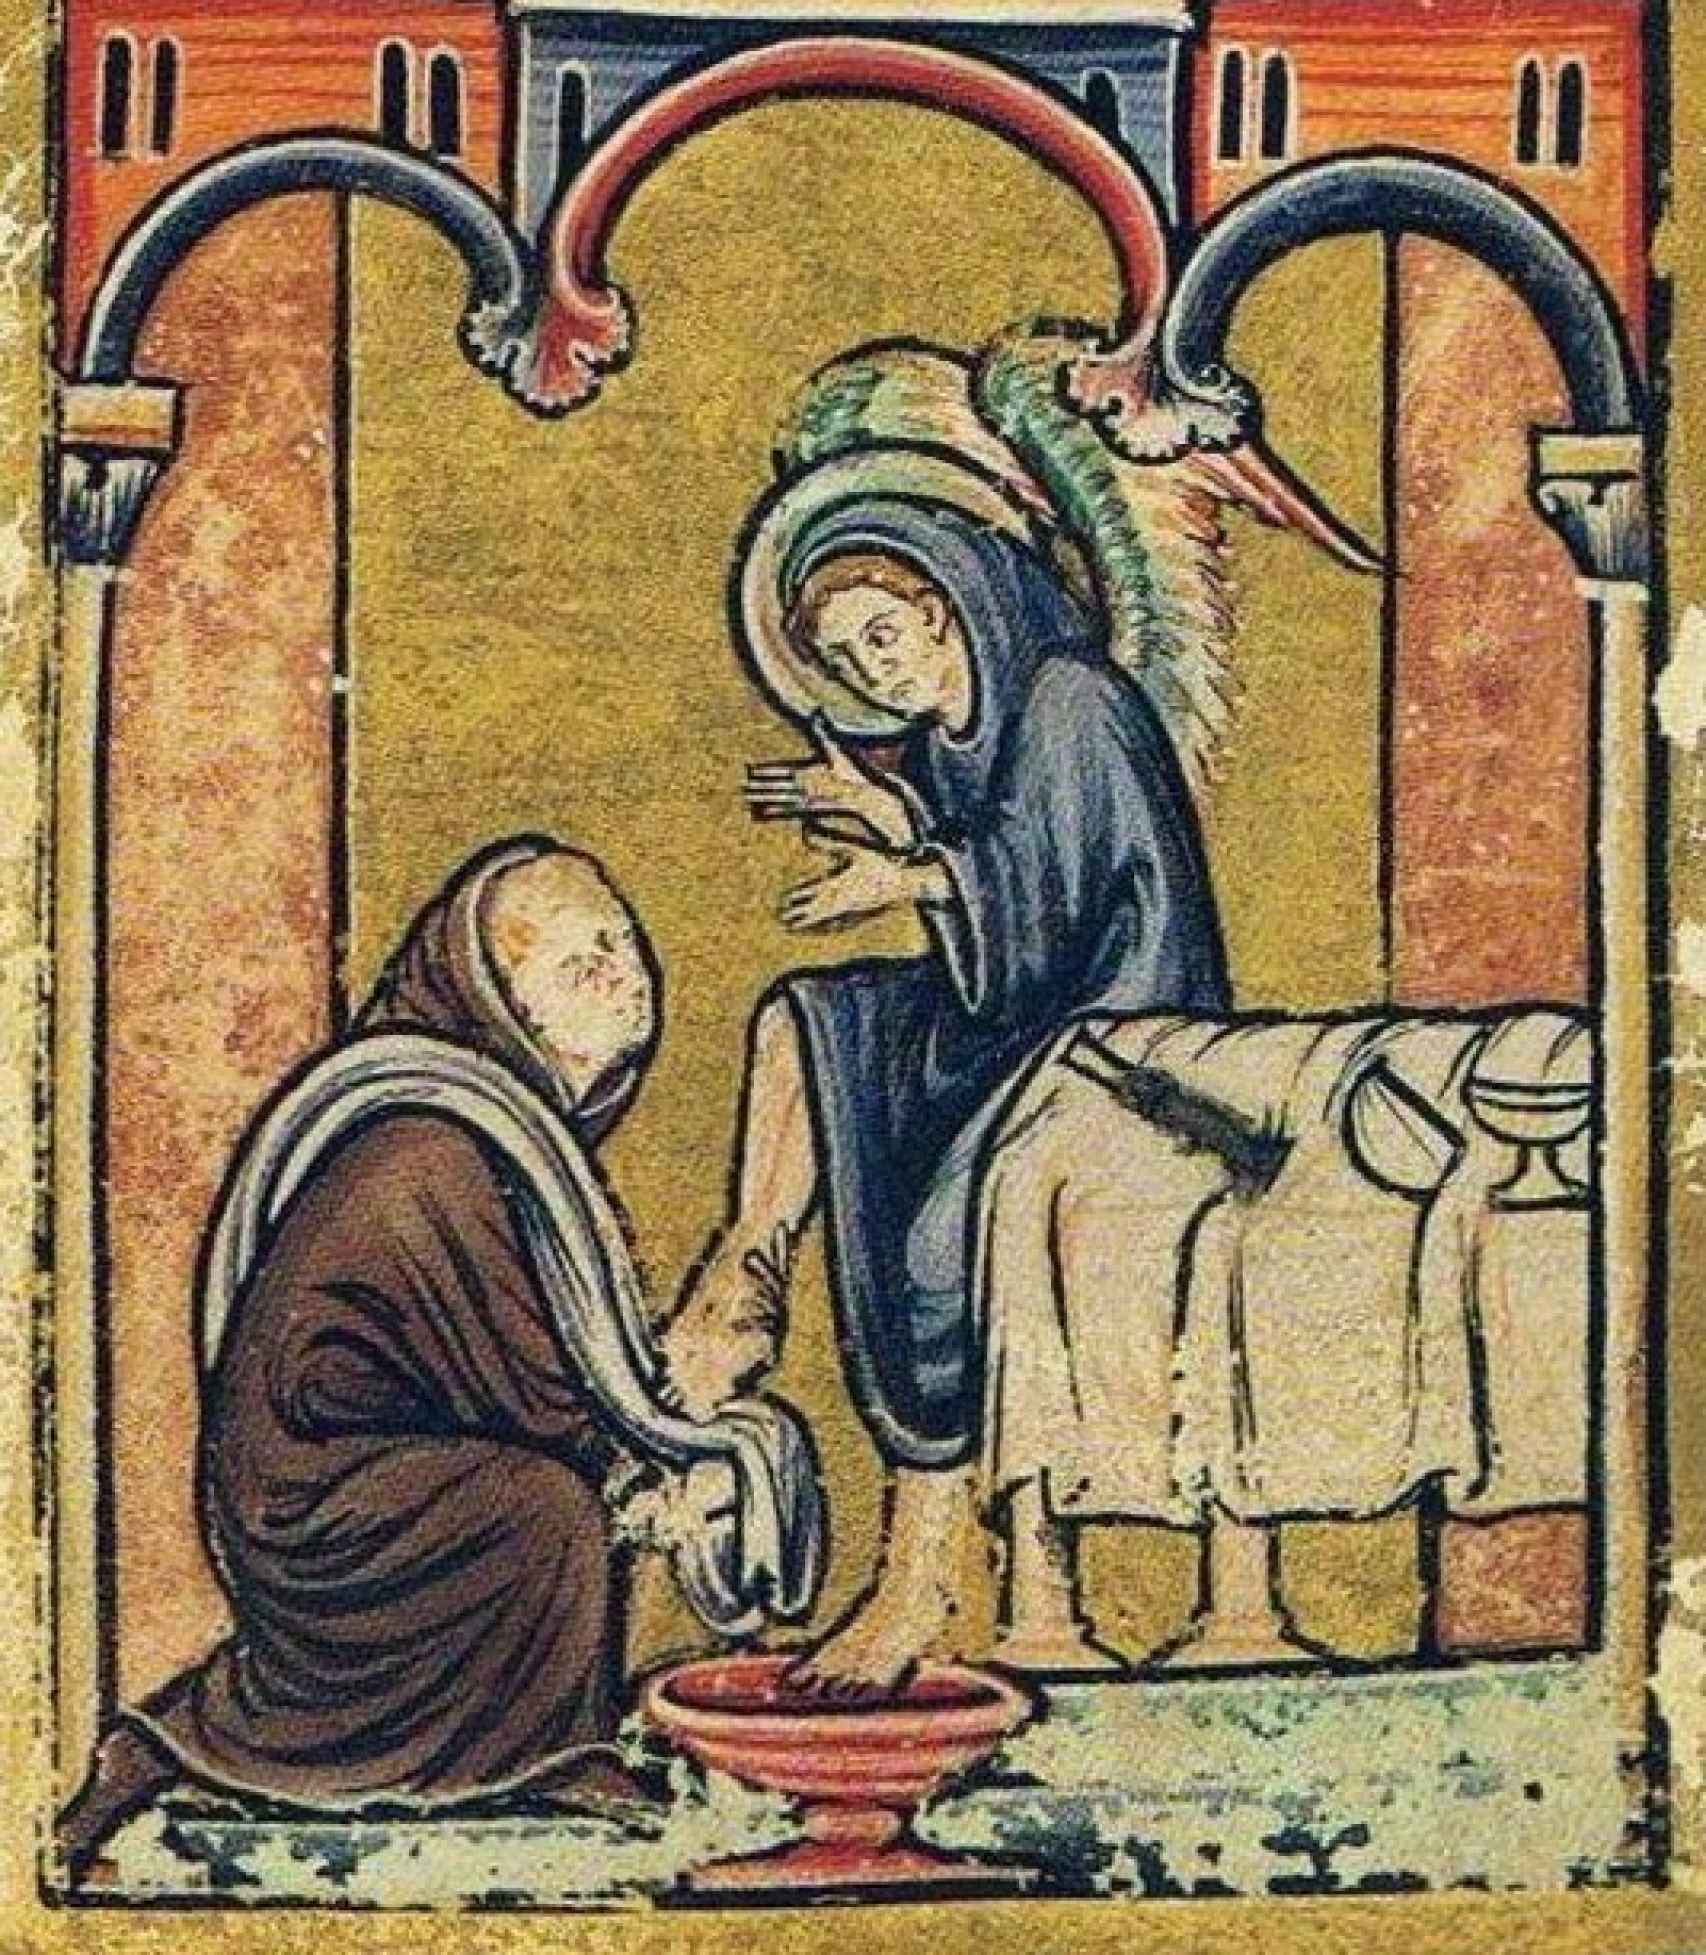 Miniatura del siglo XII que representa el monje Cuthbert lavando los pies a un ángel en un lebrillo con pie.